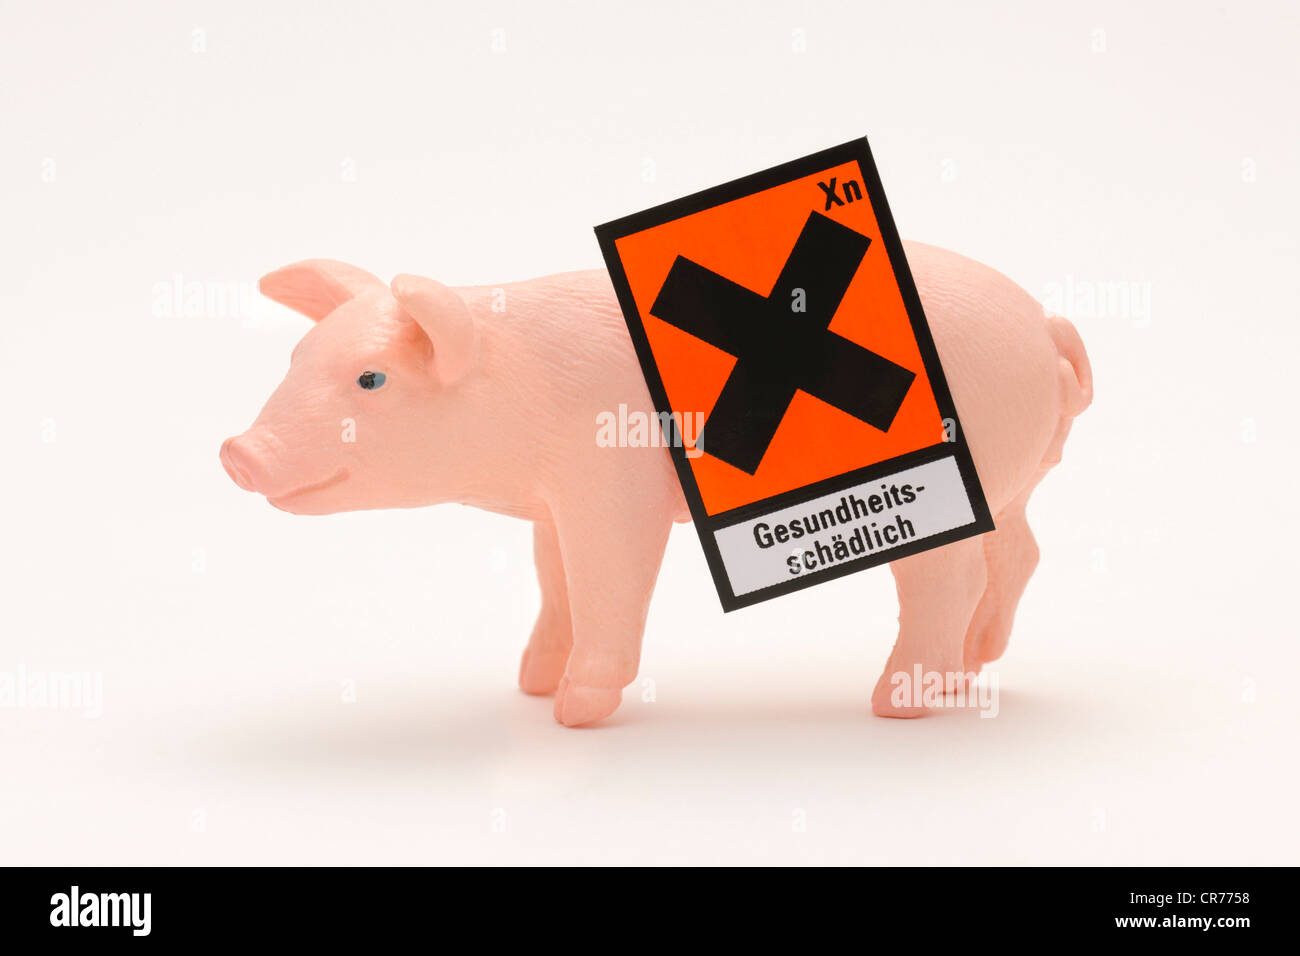 Maiale in miniatura, simbolo di pericolo "Gesundheitsschaedlich', tedesco per "nocivo per la salute', immagine simbolica per la carne di maiale contaminata Foto Stock